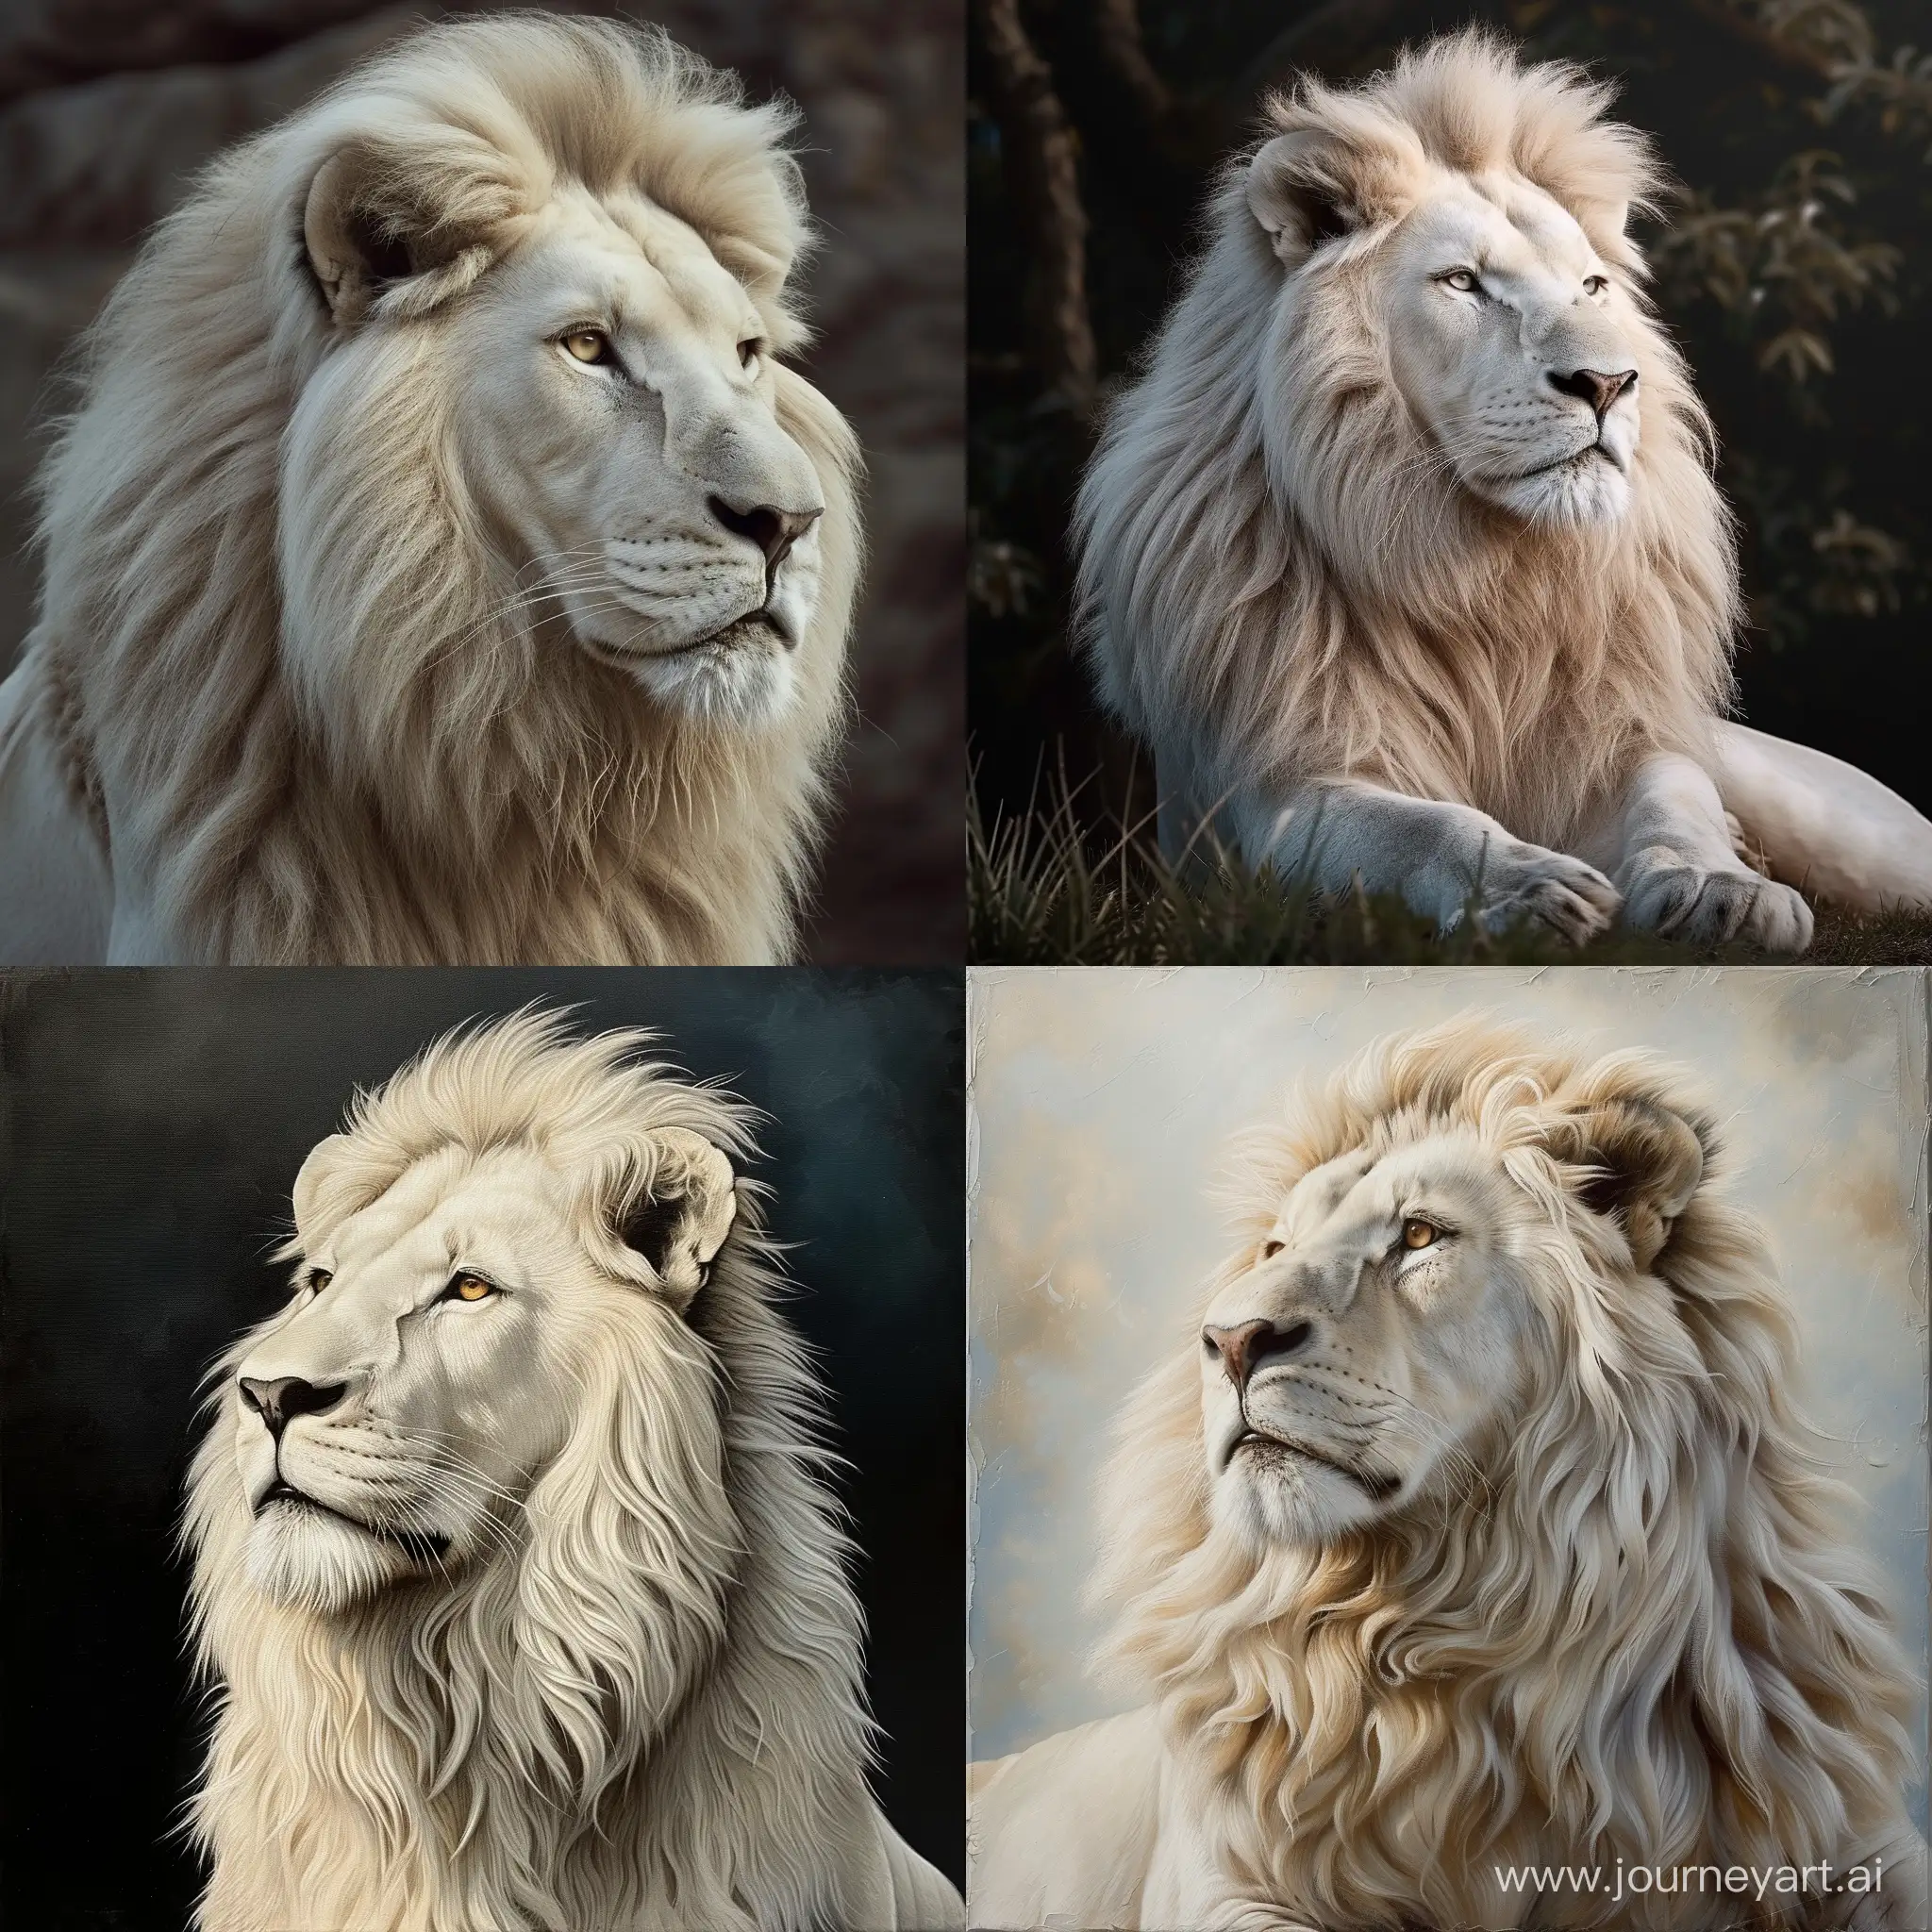 Majestic-White-Lion-in-a-11-Aspect-Ratio